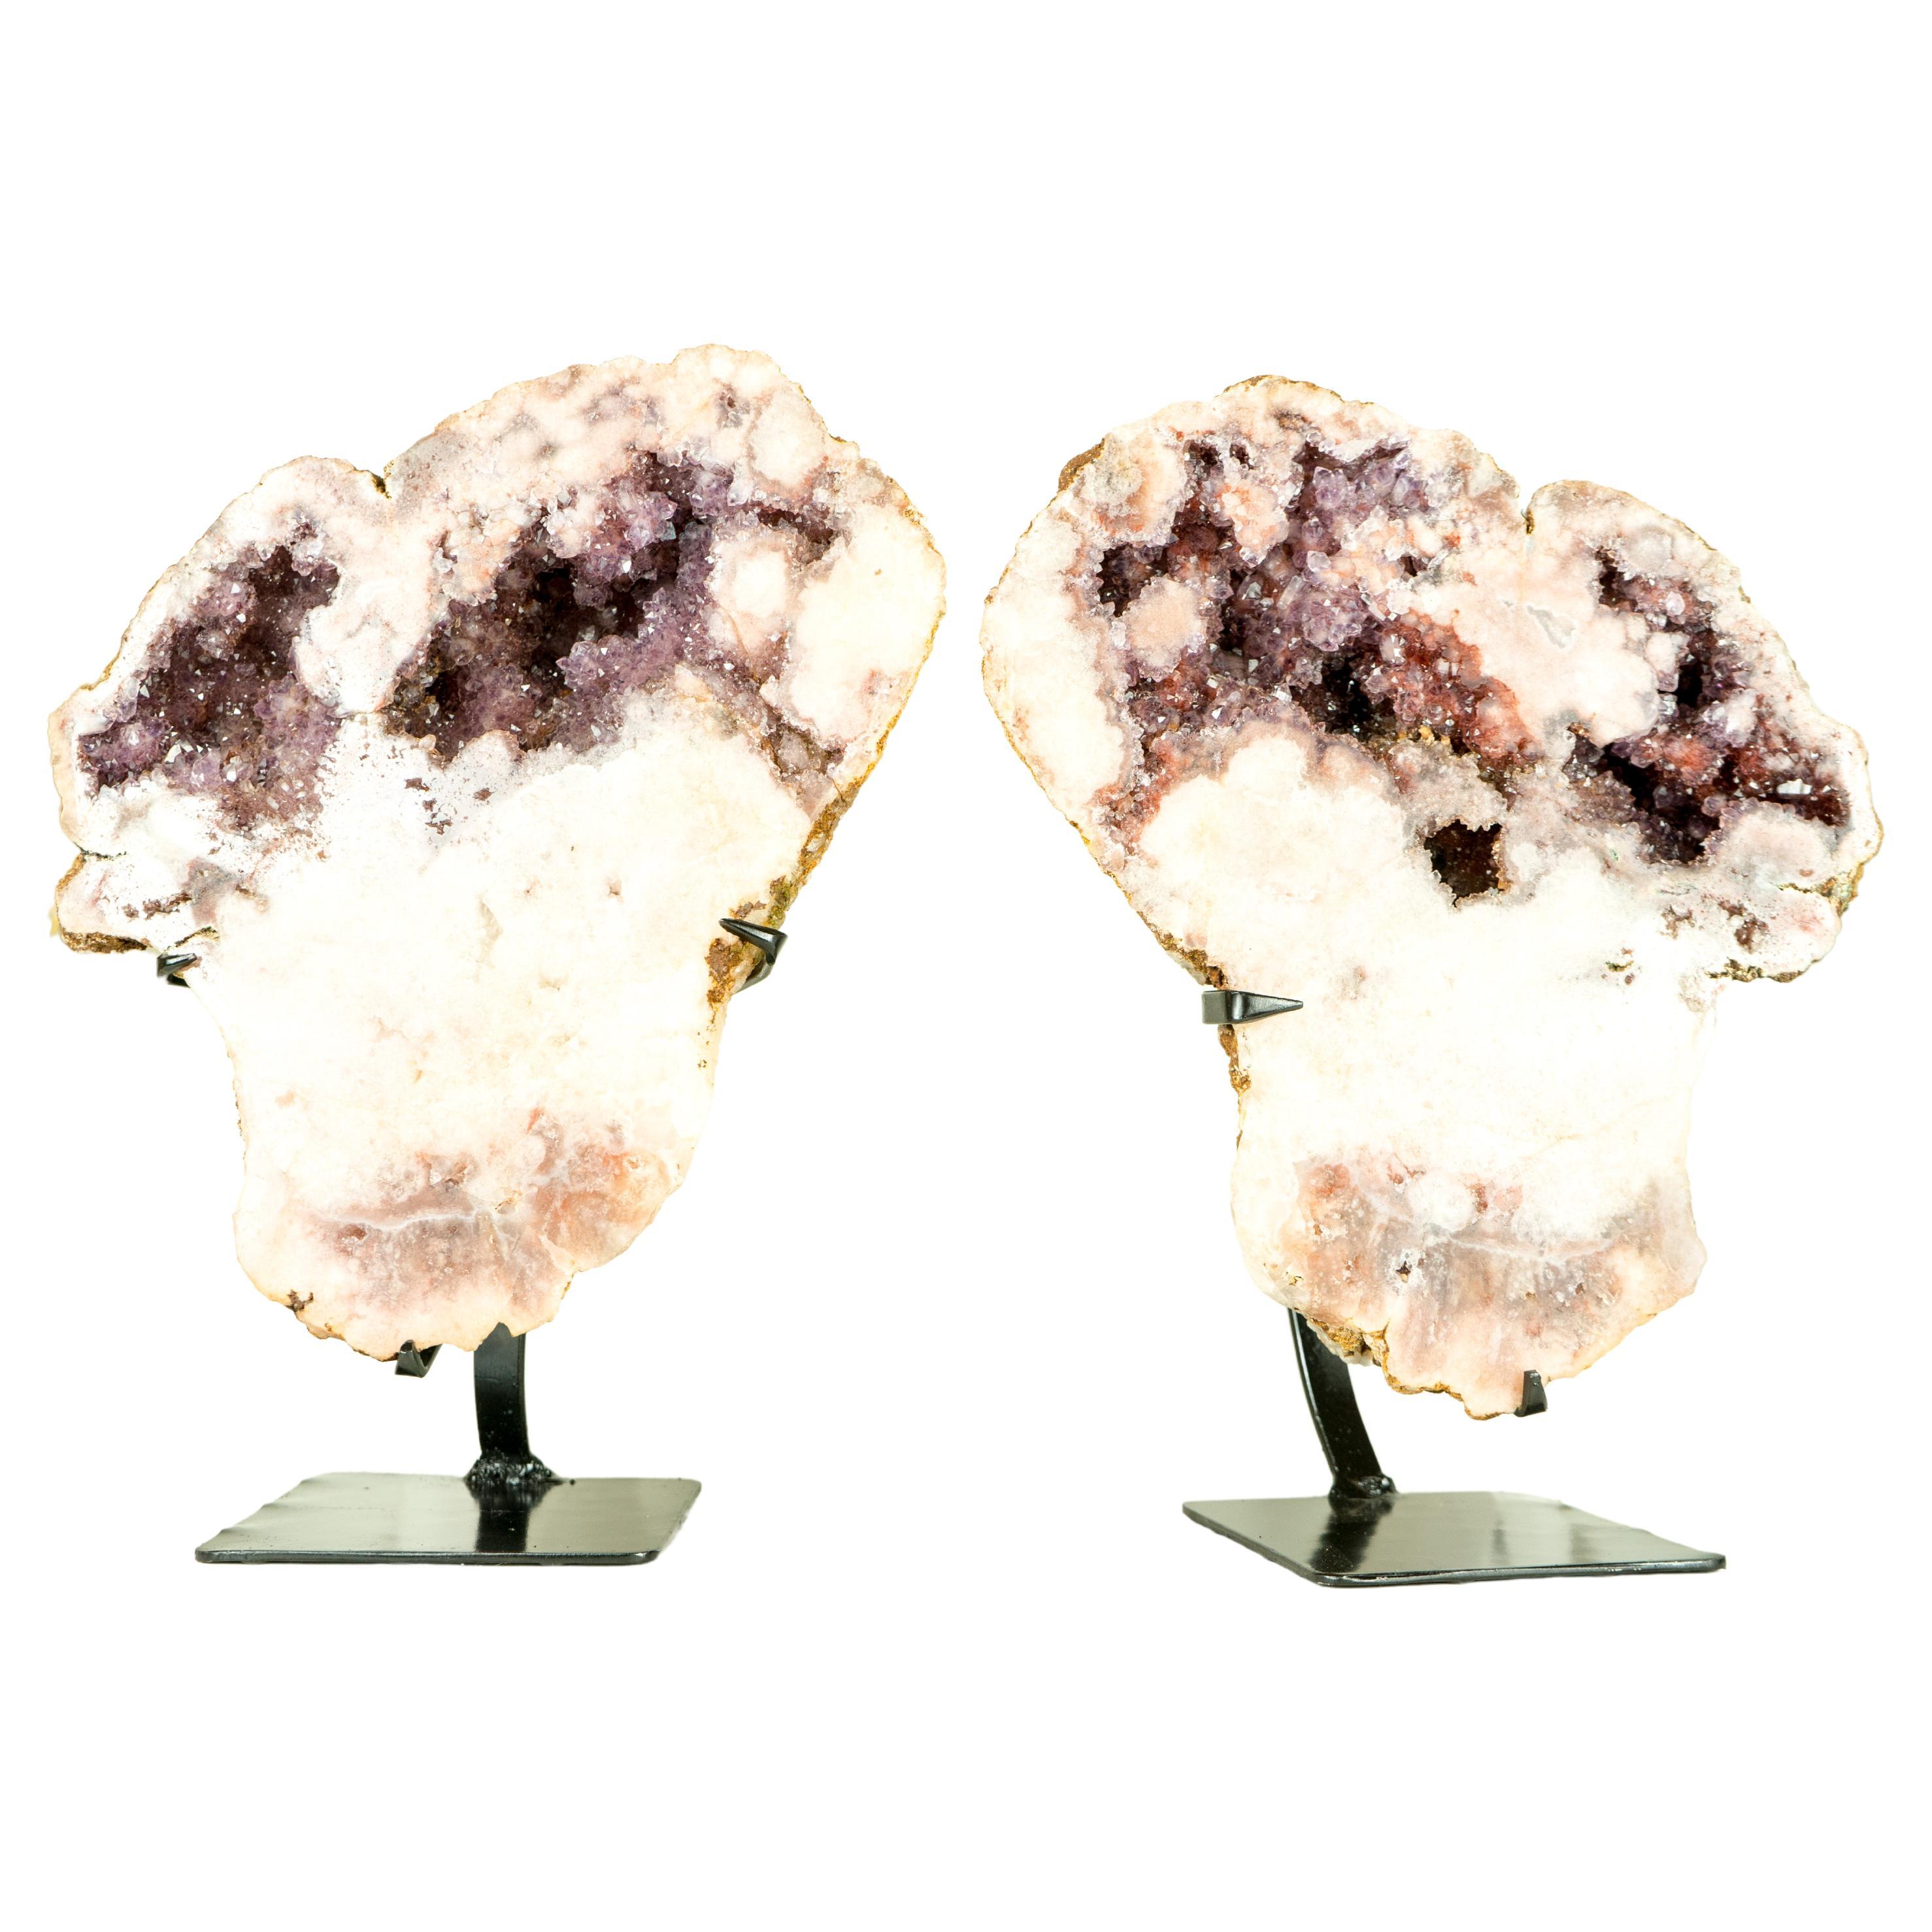 Seltenes Paar ganz natürlicher rosa Amethyst-Geode mit rotem und lavendelfarbenem Amethyst